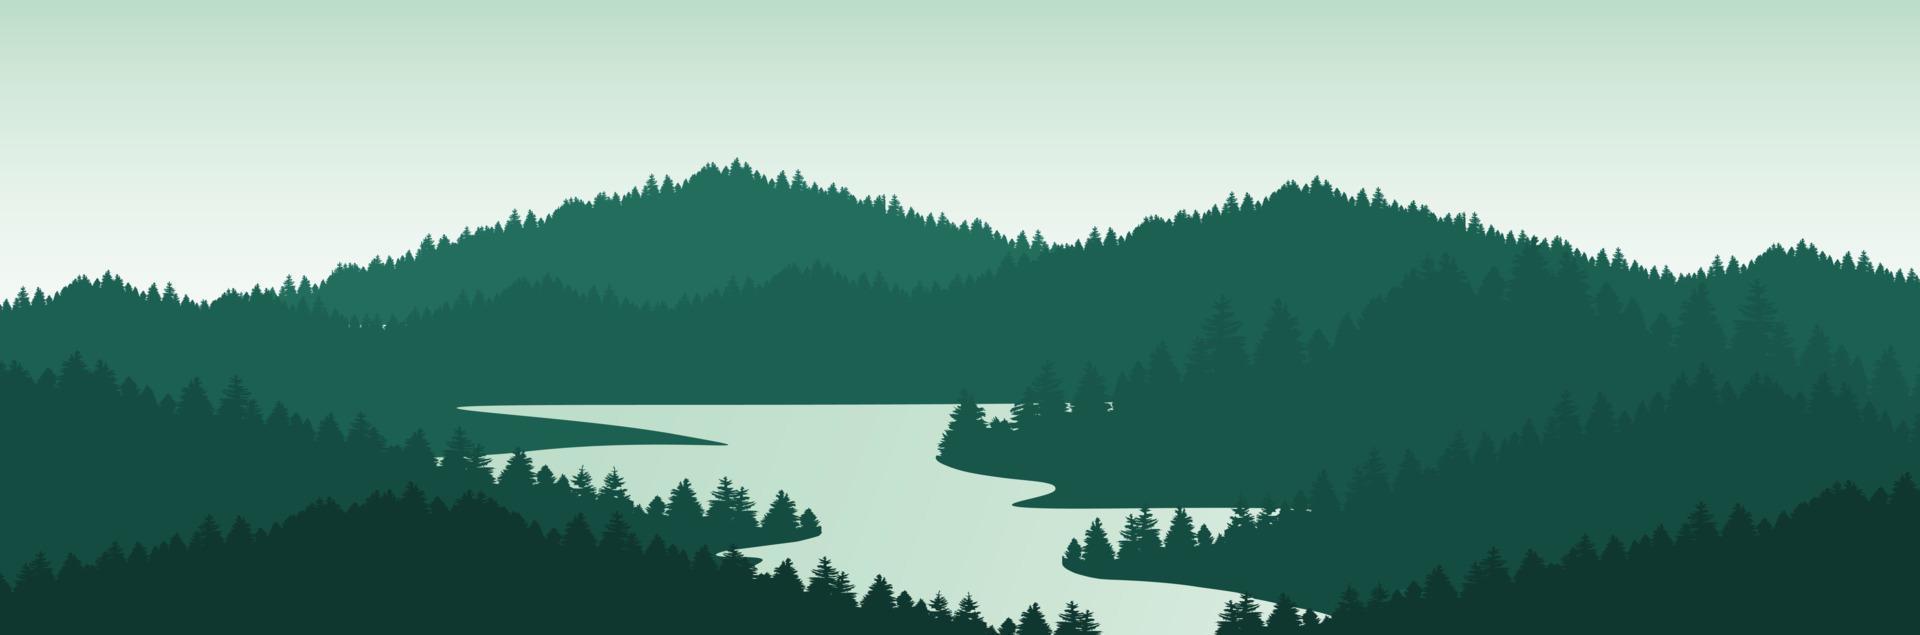 Landschaft mit Bergen und Bäumen vektor